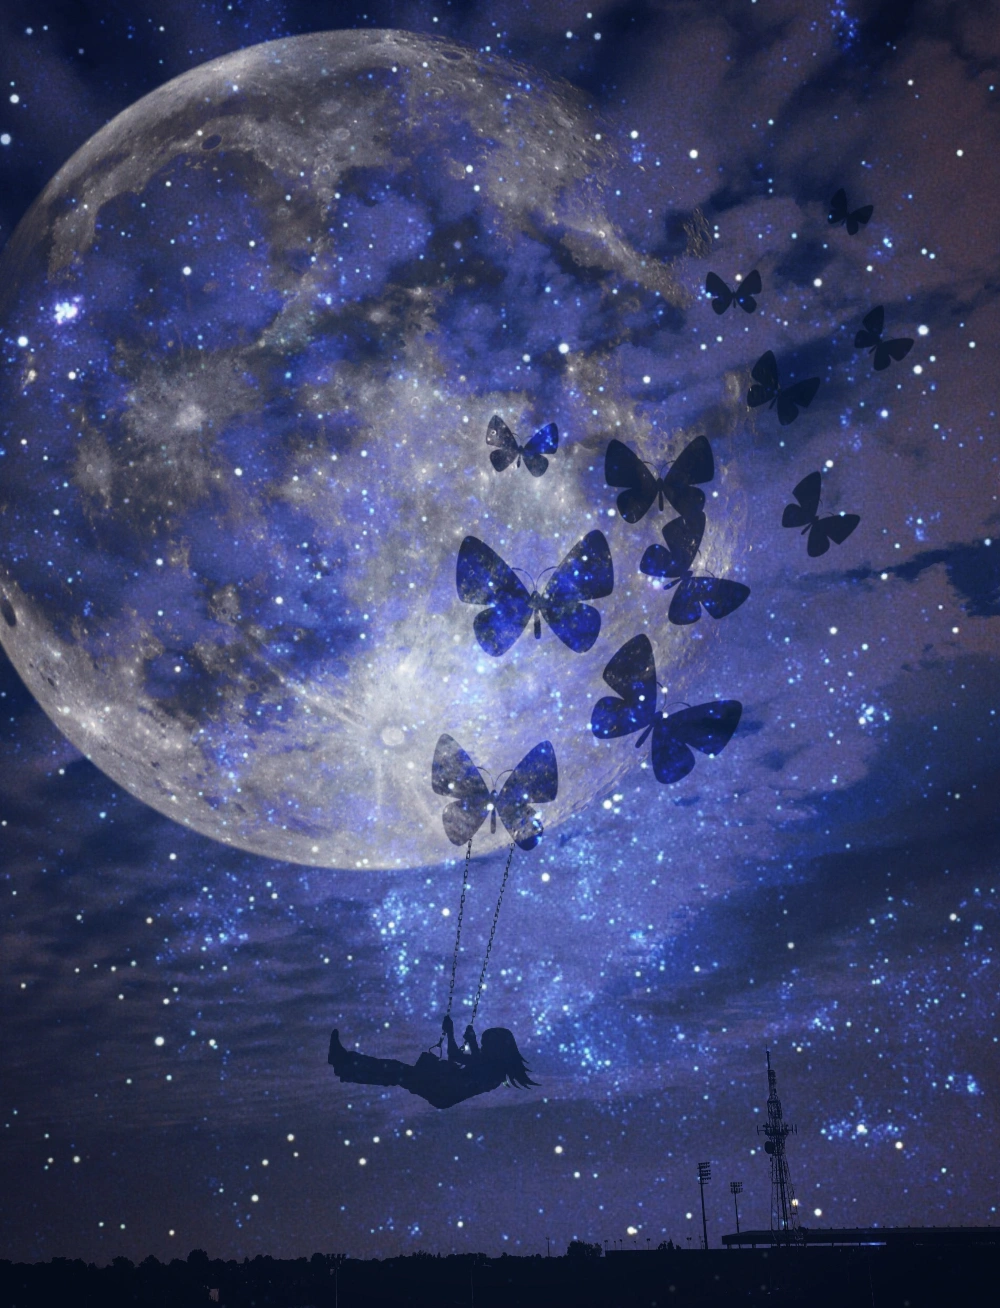 #wapstarrysky #butterfly #moonlight #galaxy